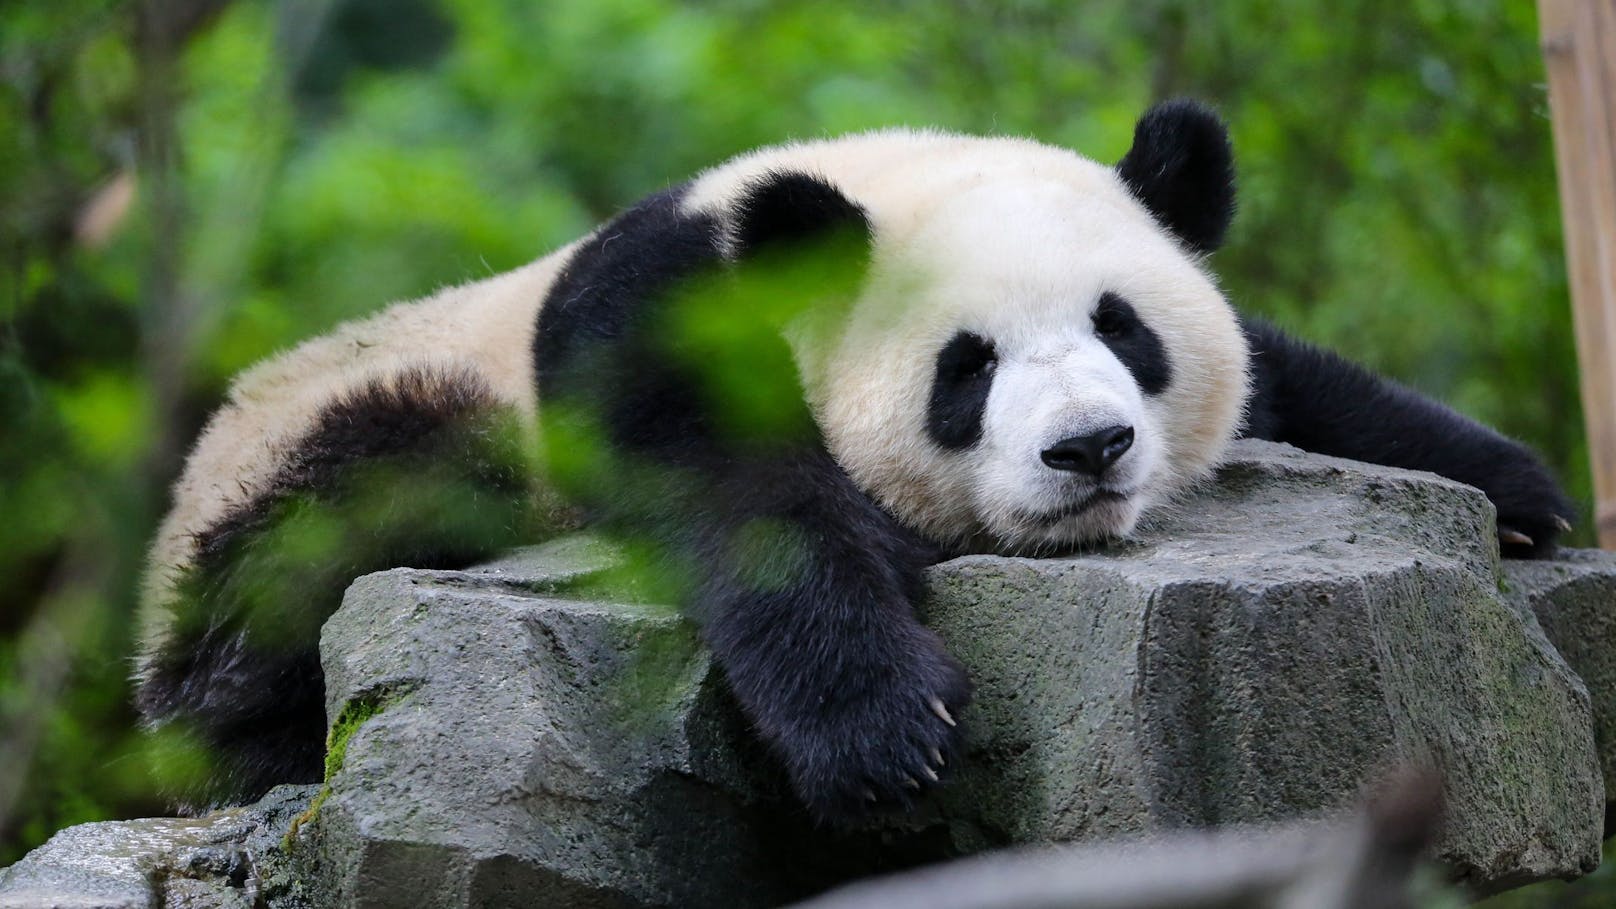 Schafft es der Große Panda bald von der roten Liste?